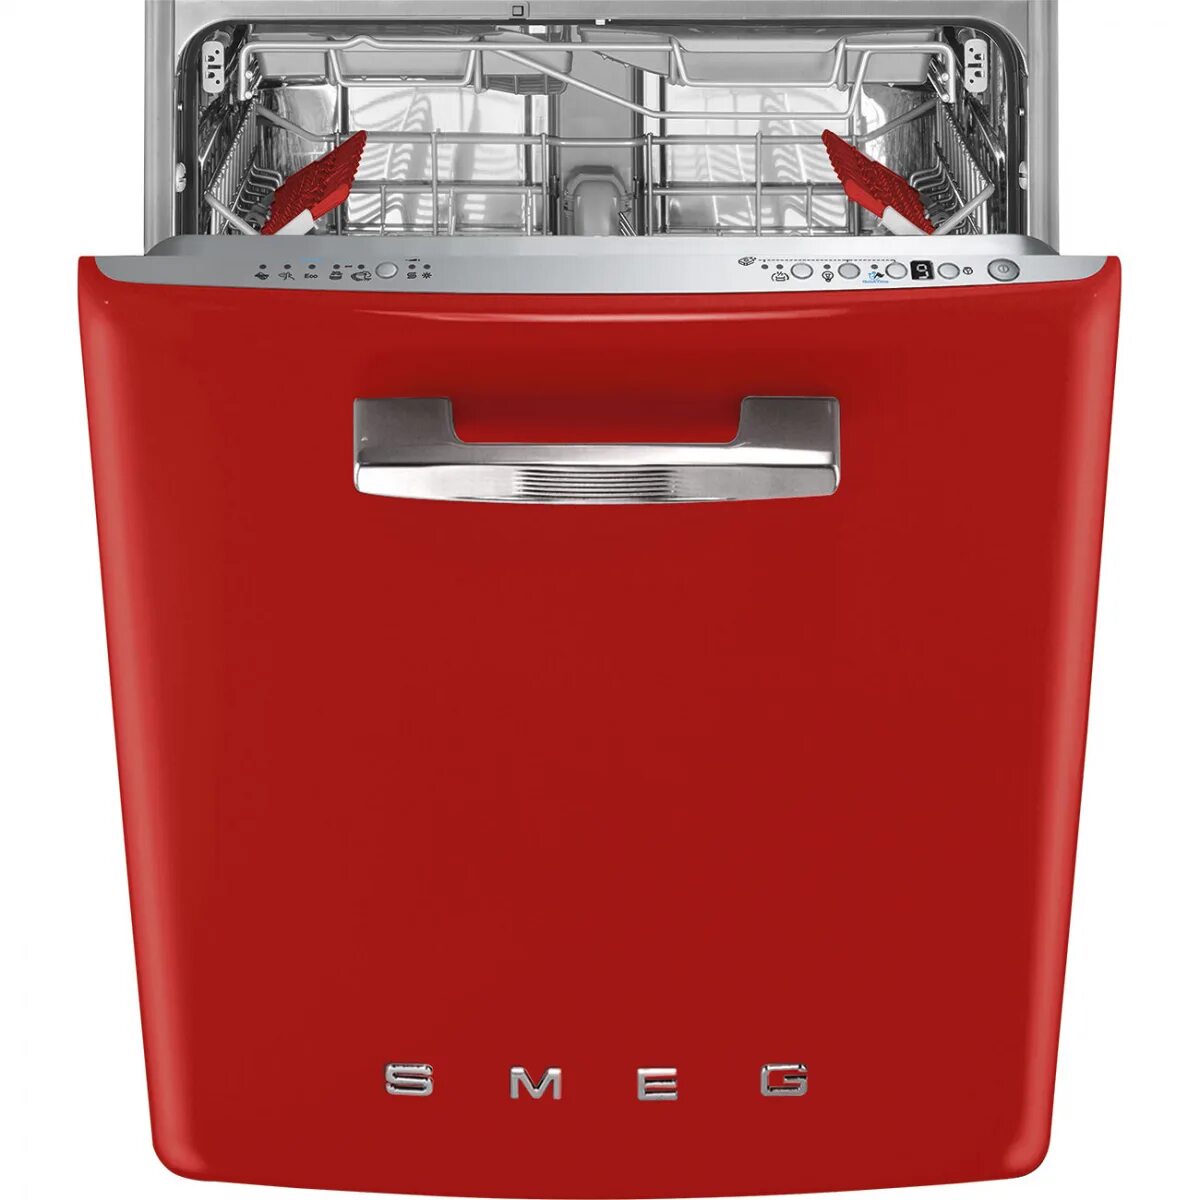 Купить посудомоечную машину в интернет магазине. Посудомоечная машина Smeg st2fabr2. Посудомоечная машина Smeg st2fabcr. Смег посудомоечная машина встраиваемая. Посудомоечная машина Смег 45 см встраиваемая.